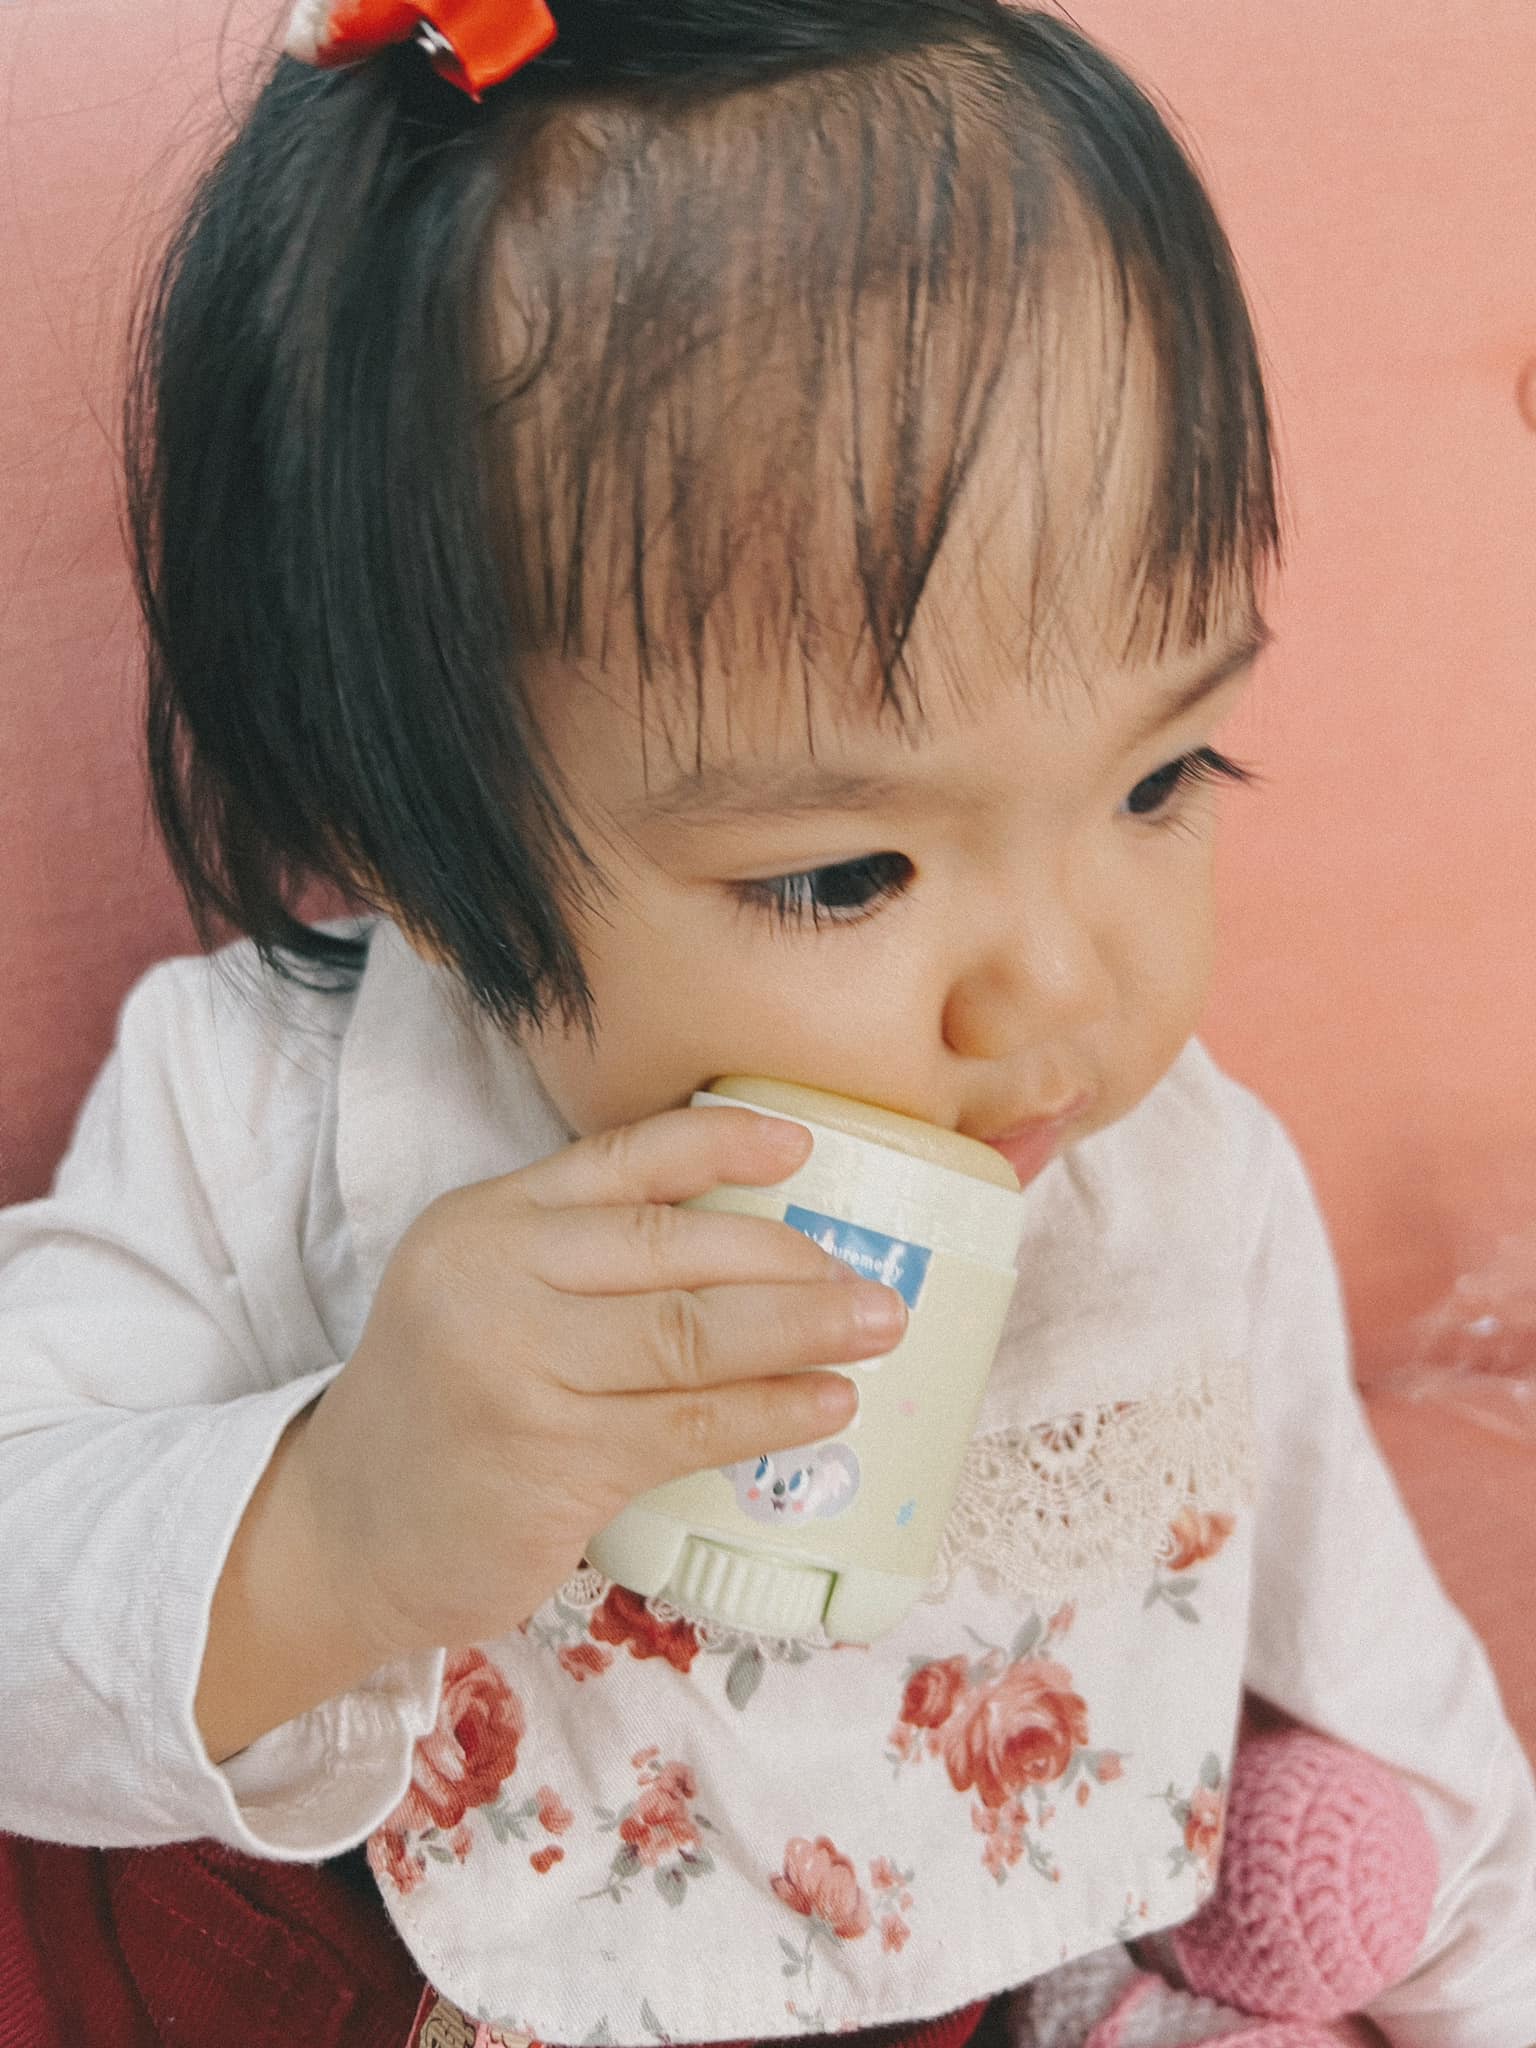 Admin nhóm Review Bỉm Sữa Official chia sẻ 4 loại kem bôi nẻ dành cho bé, có thể dùng quanh năm bất kể thời tiết nào - Ảnh 4.